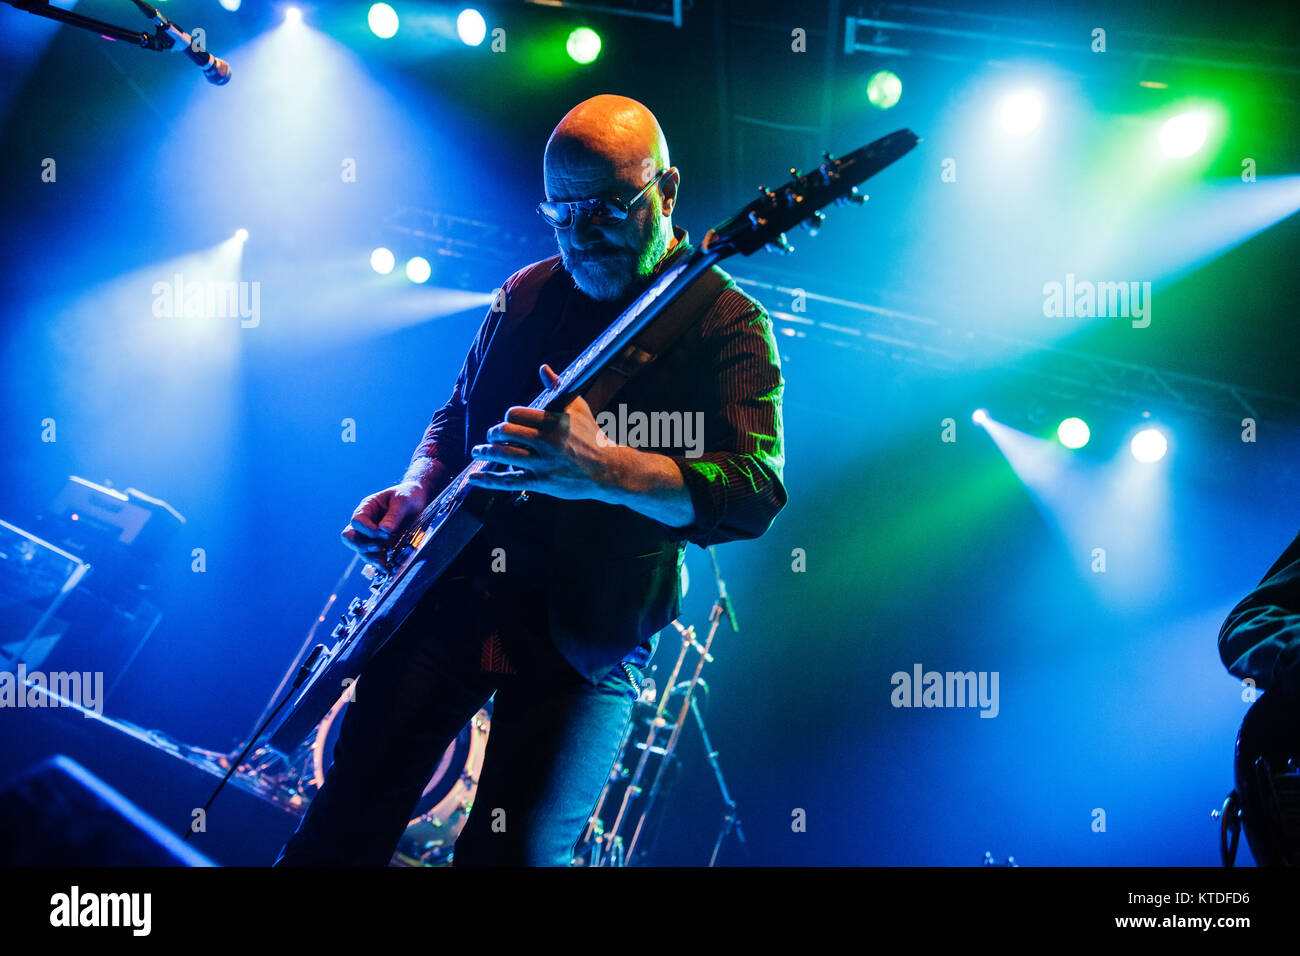 Le groupe de rock britannique Wishbone Ash effectue un concert live à Amager Bio à Copenhague. Ici le chanteur et guitariste Andy Powell est vu sur scène. Le Danemark, 29/01 2015. Banque D'Images